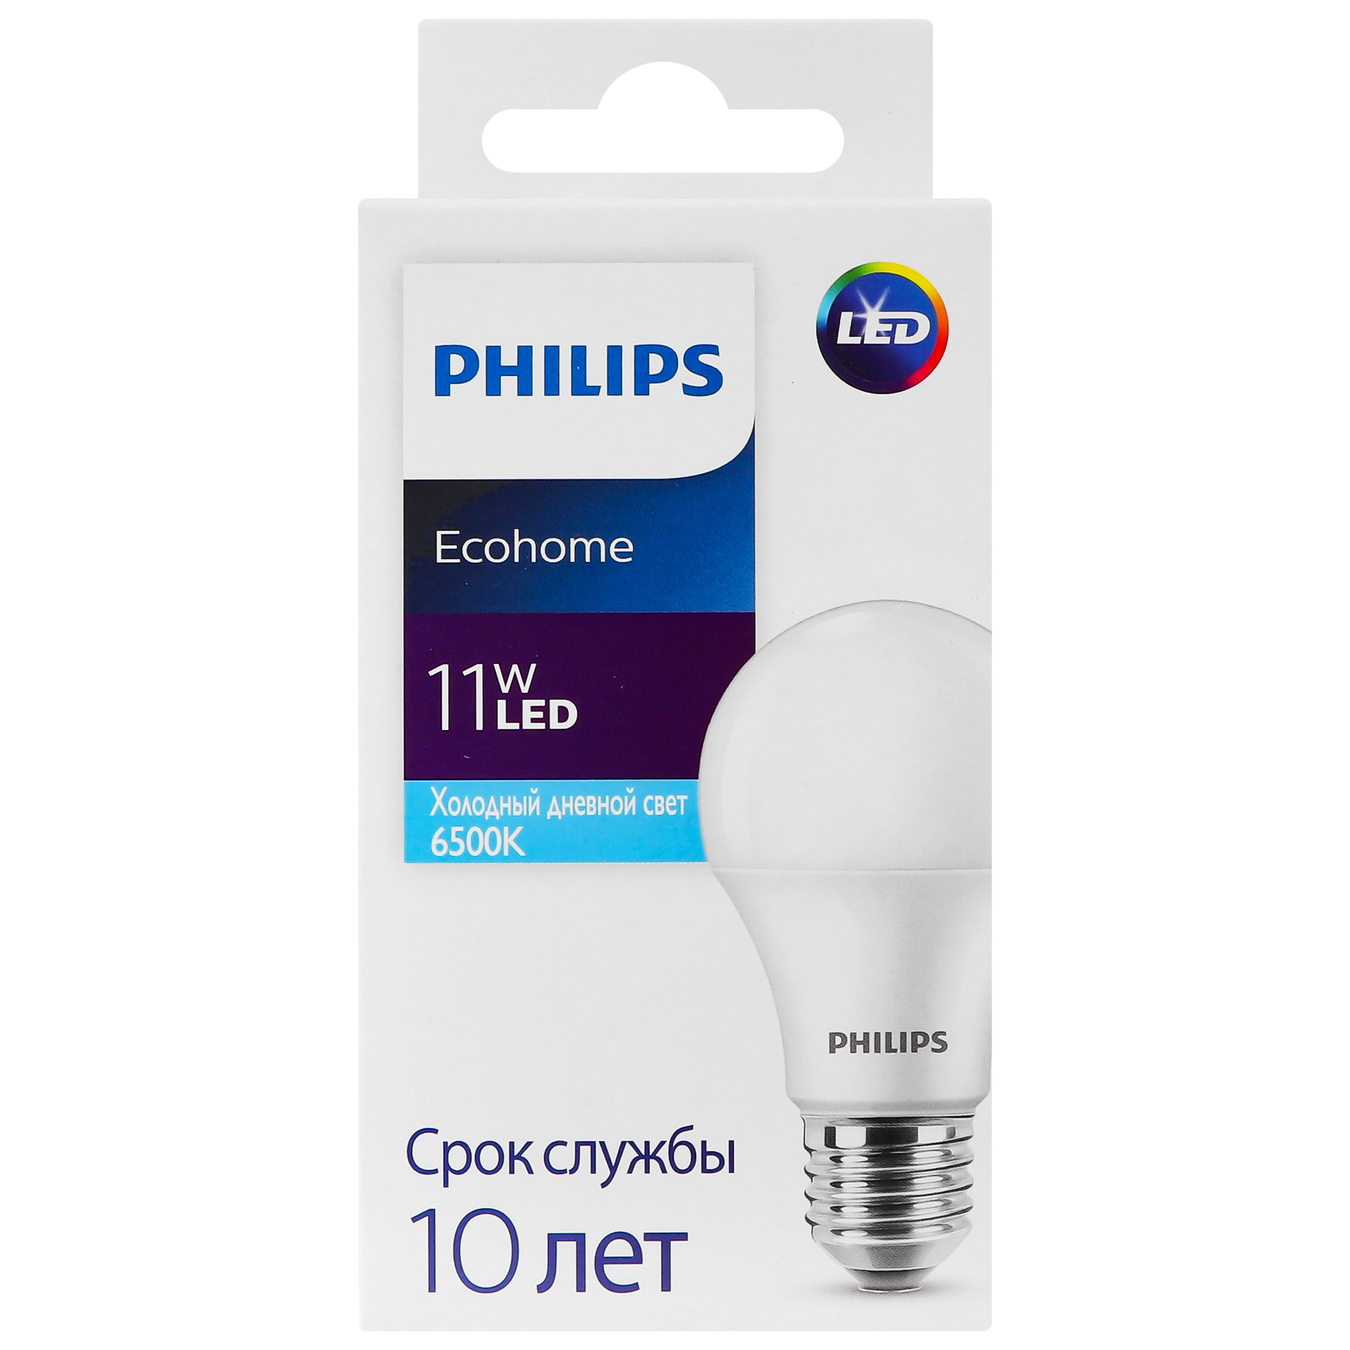 Лампочка Philips Ecohome Bulb светодиодная 11W E27 6500K 1PF/20RCA